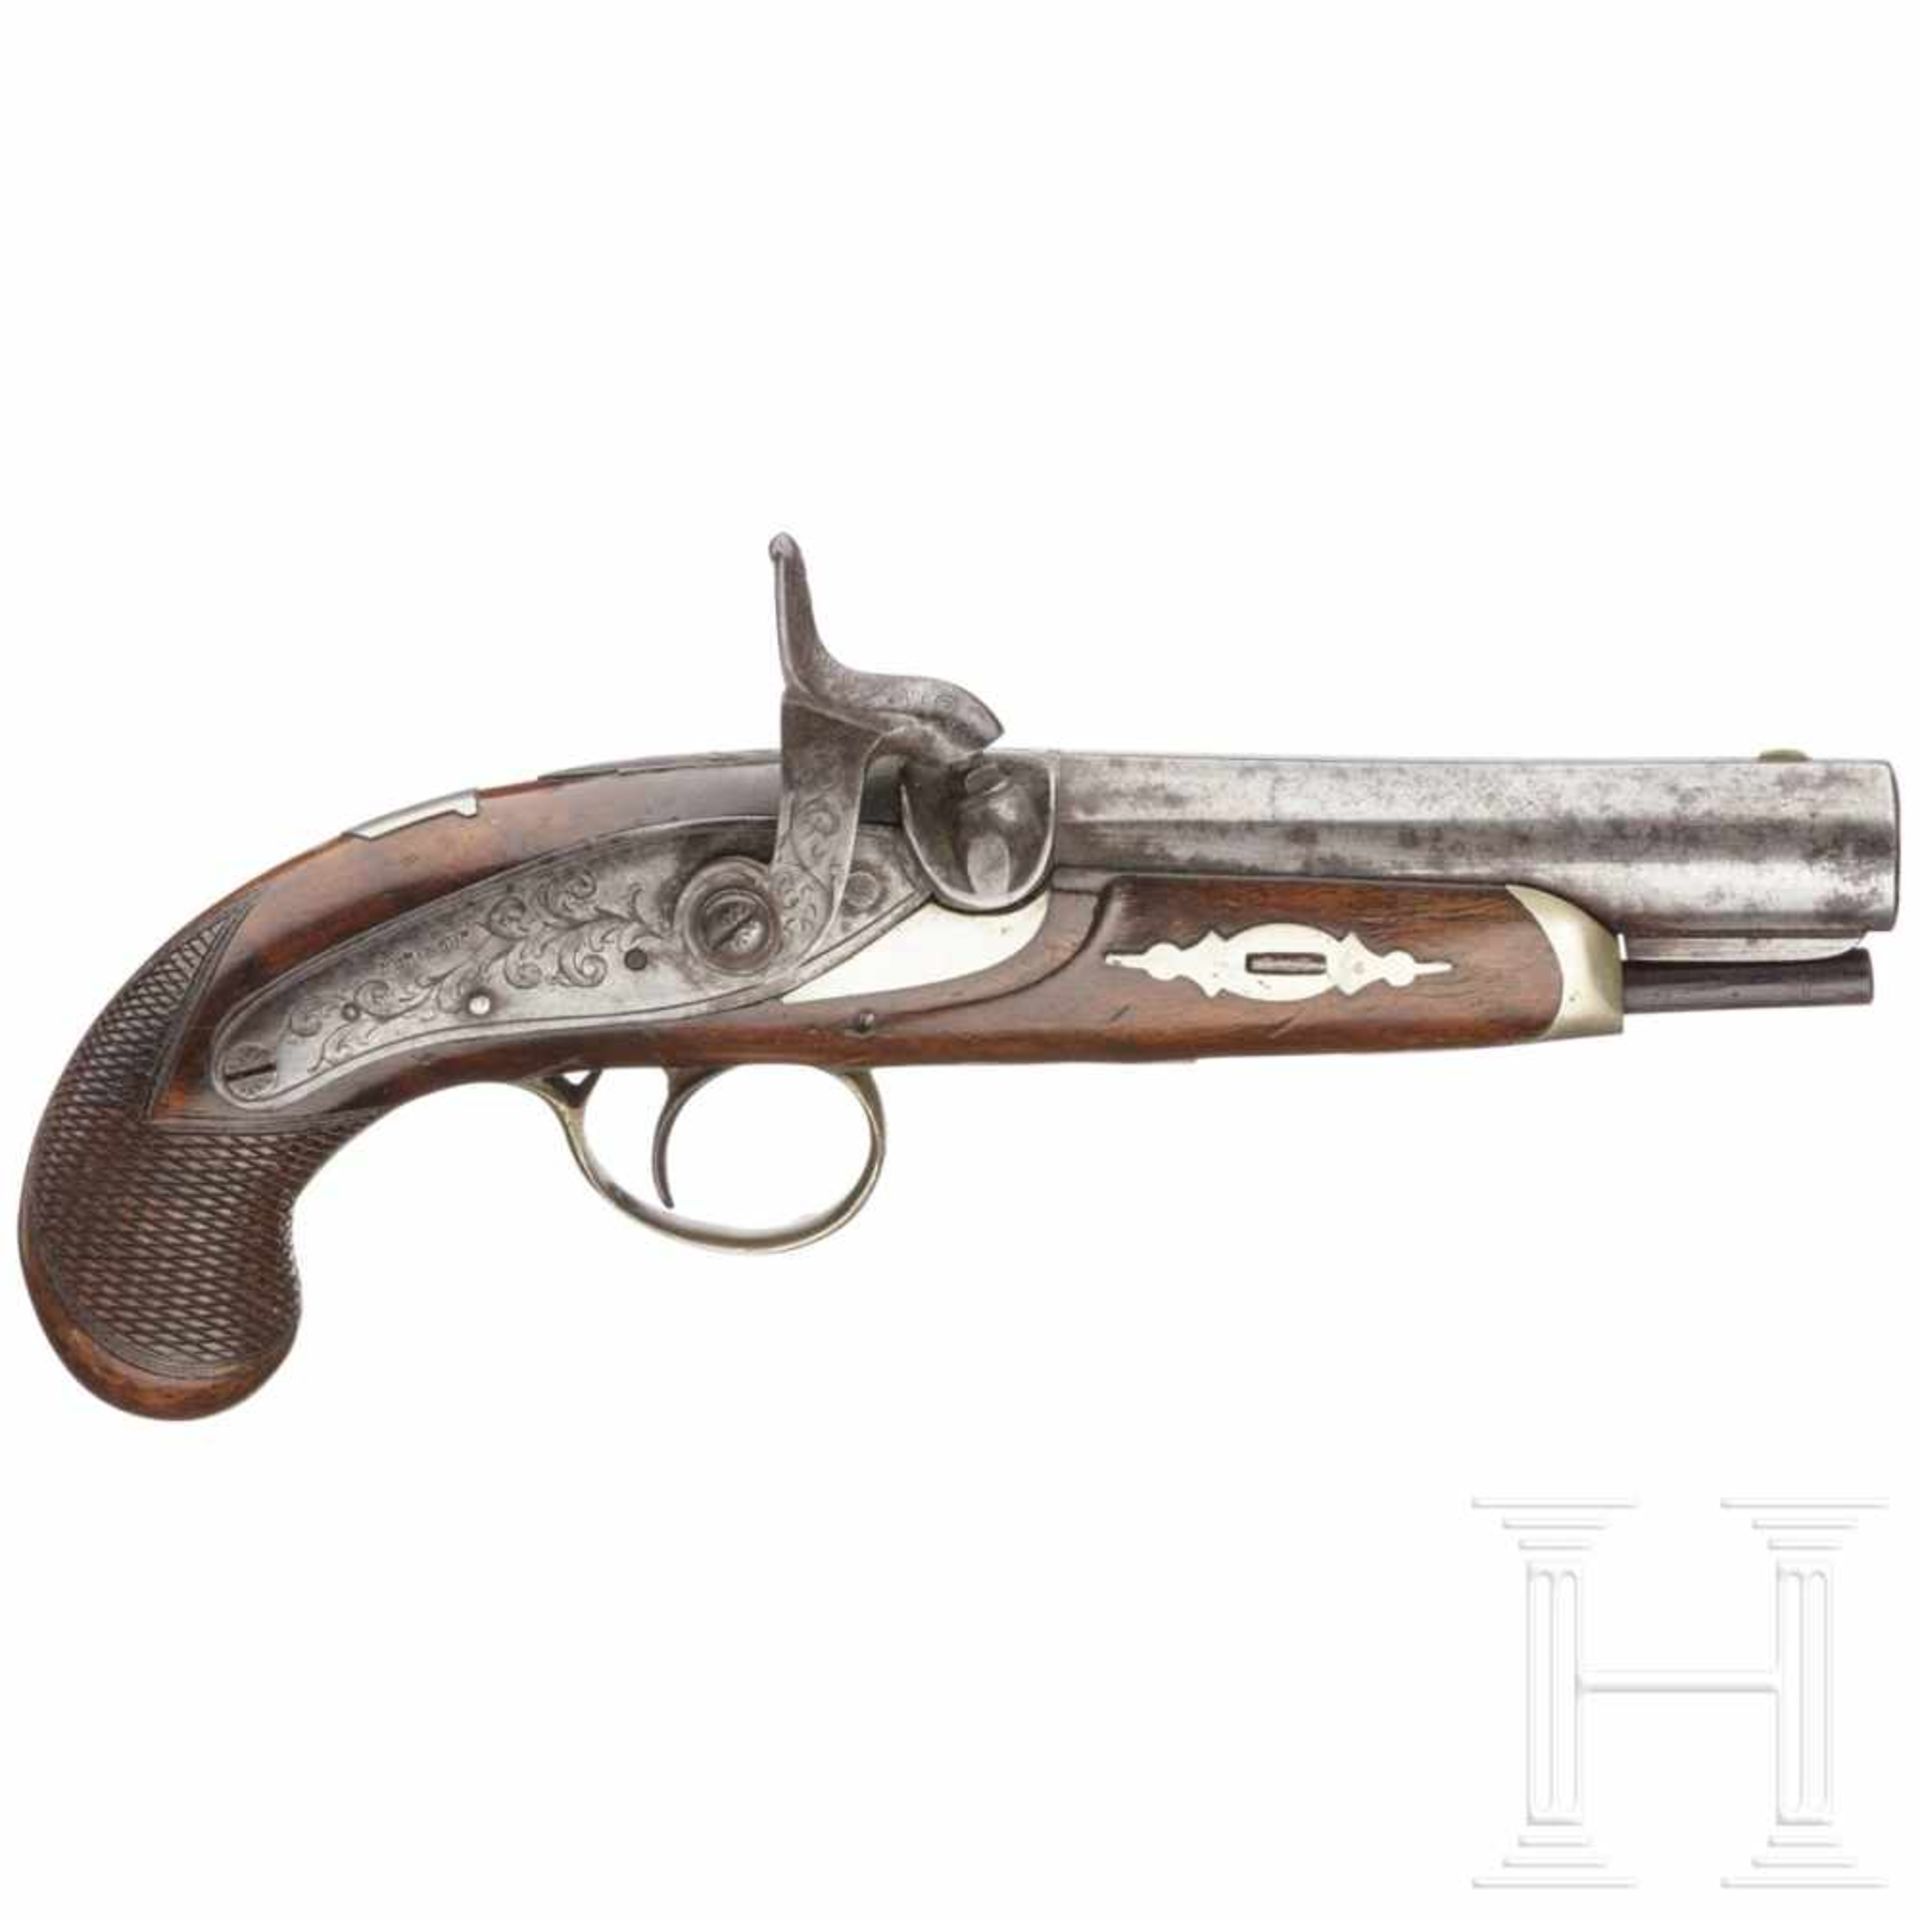 Taschenpistole, USA, um 1850